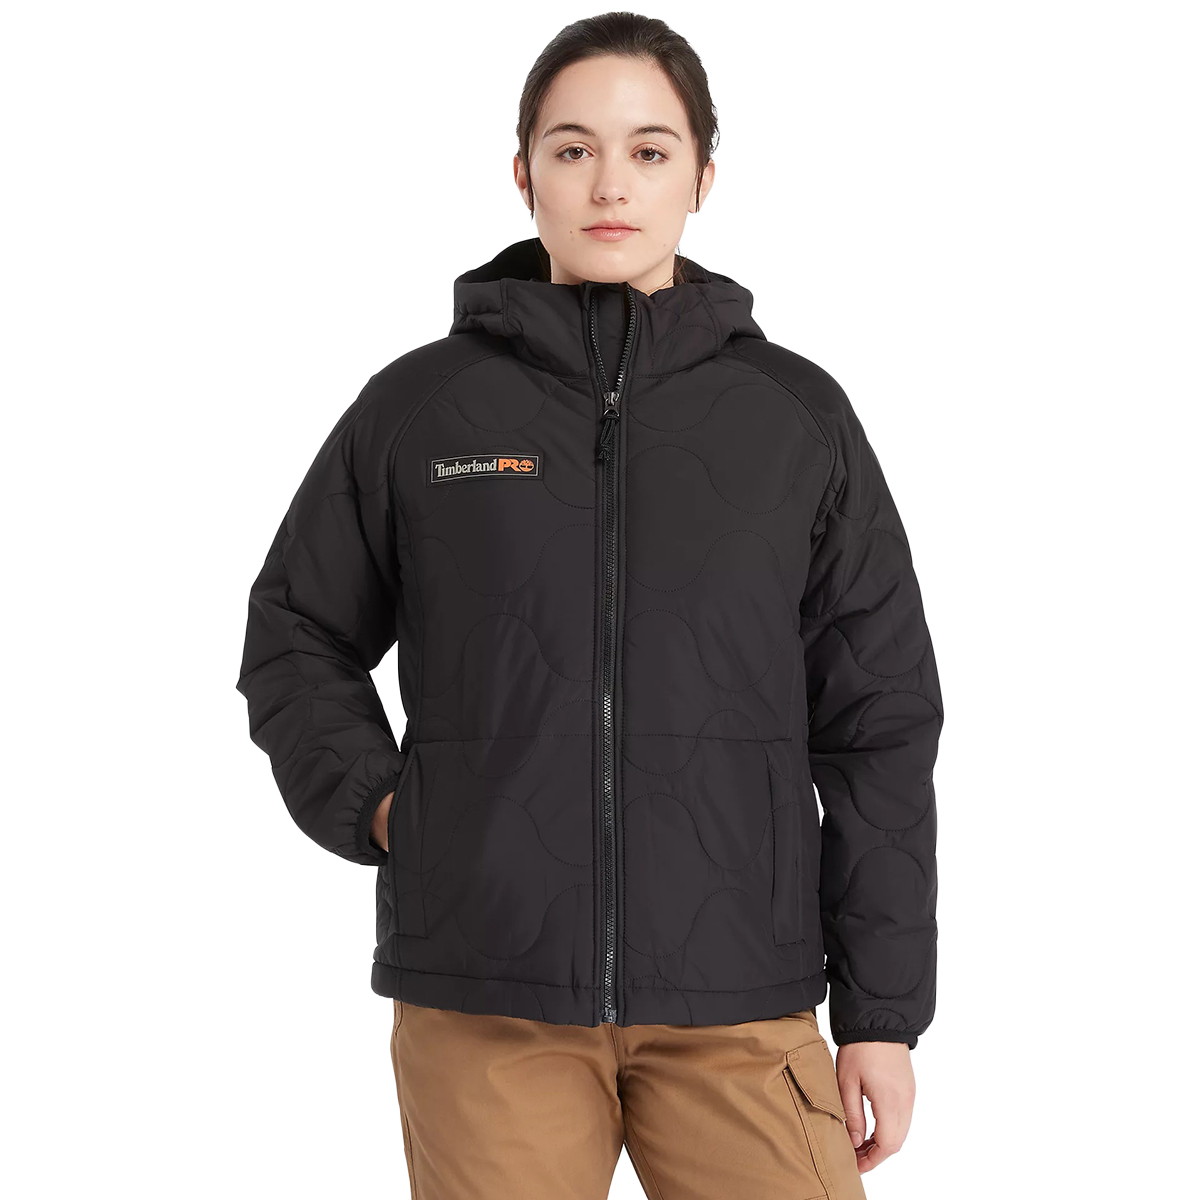 Timberland Pro Women's Hypercore Insulated Jacket